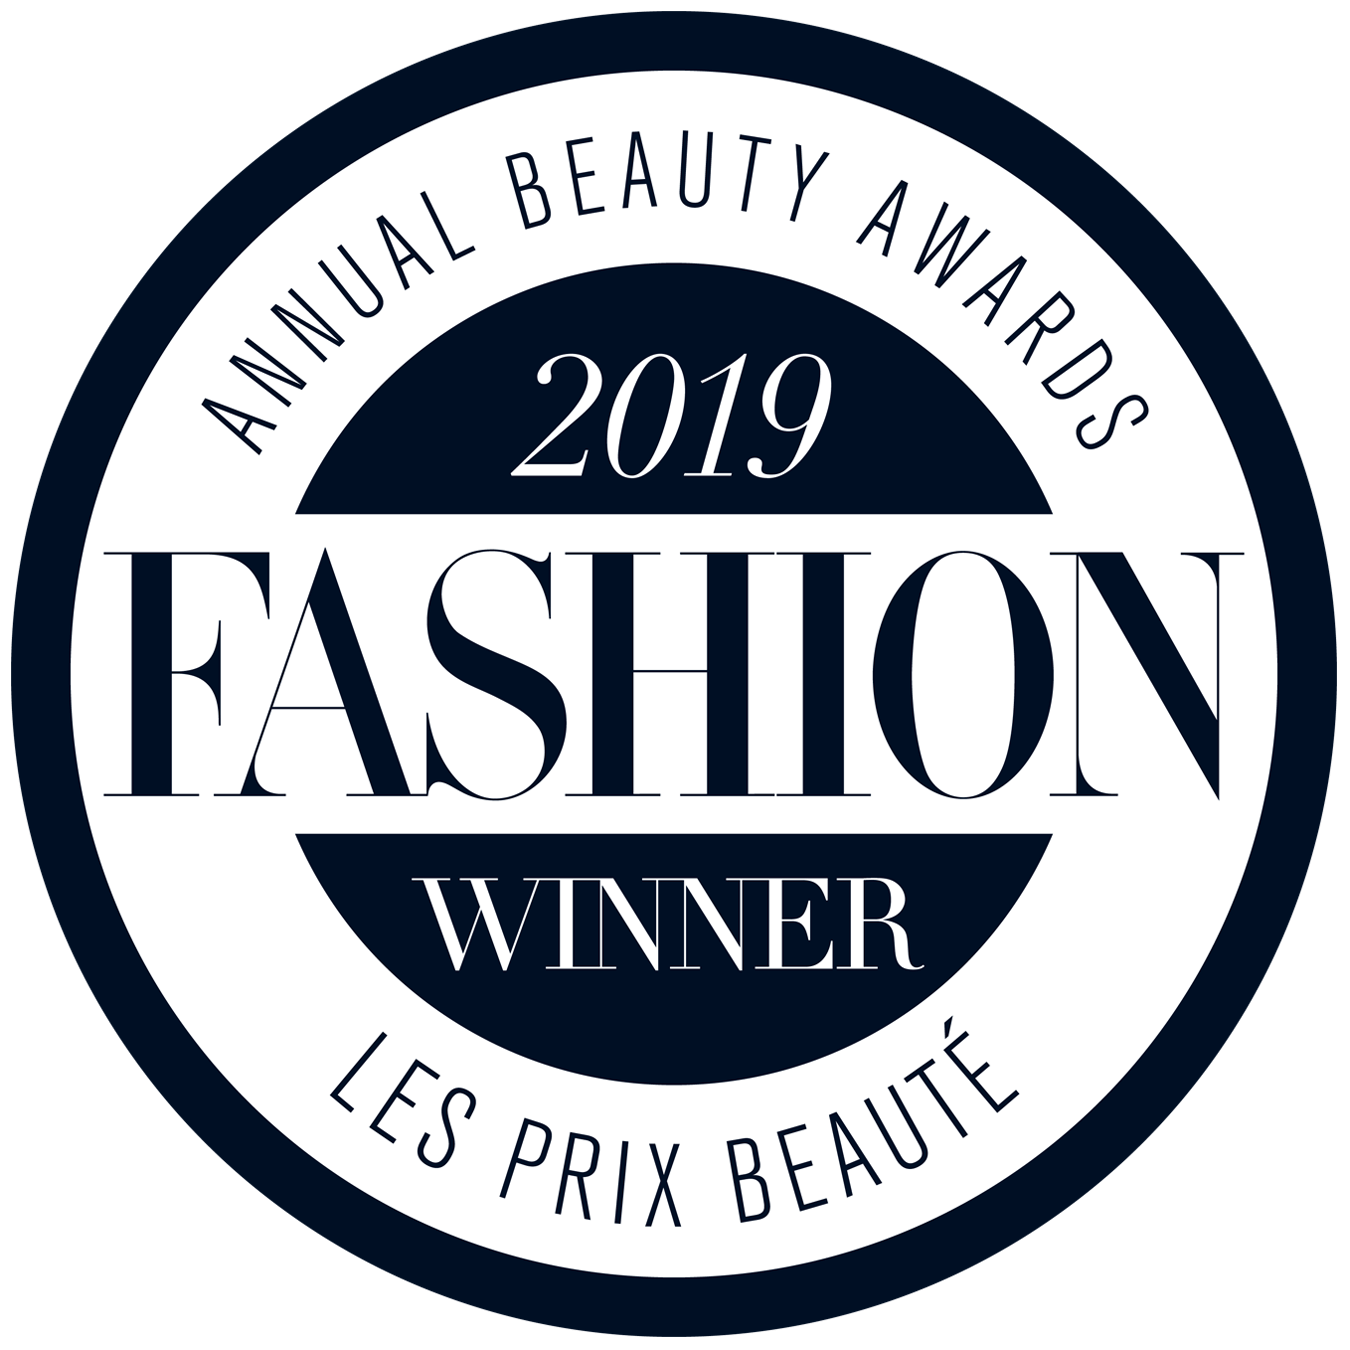 Gagnant du Prix de beauté FASHION 2019 